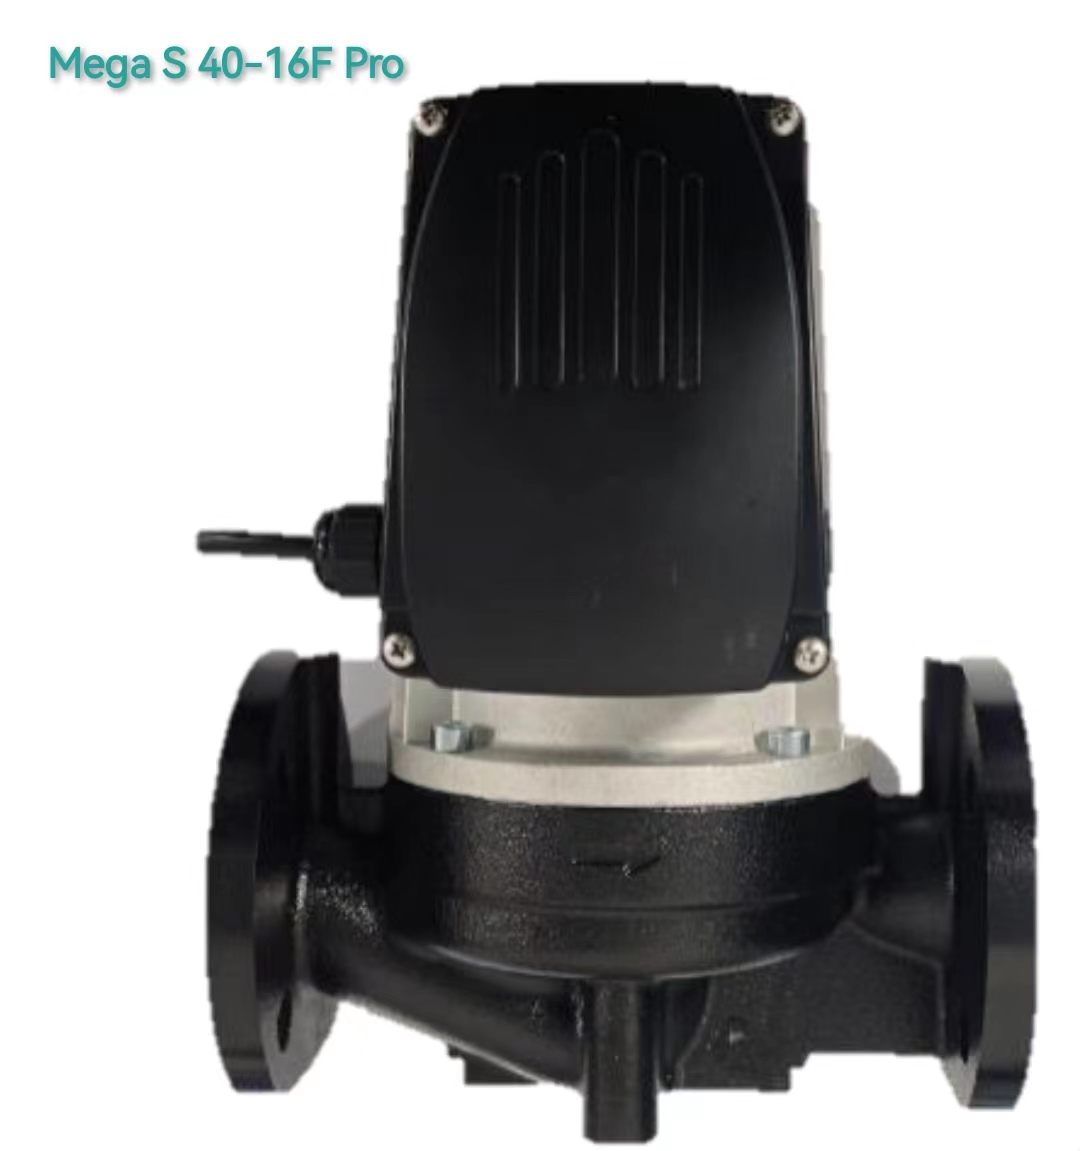 MegaS40-16F Pro